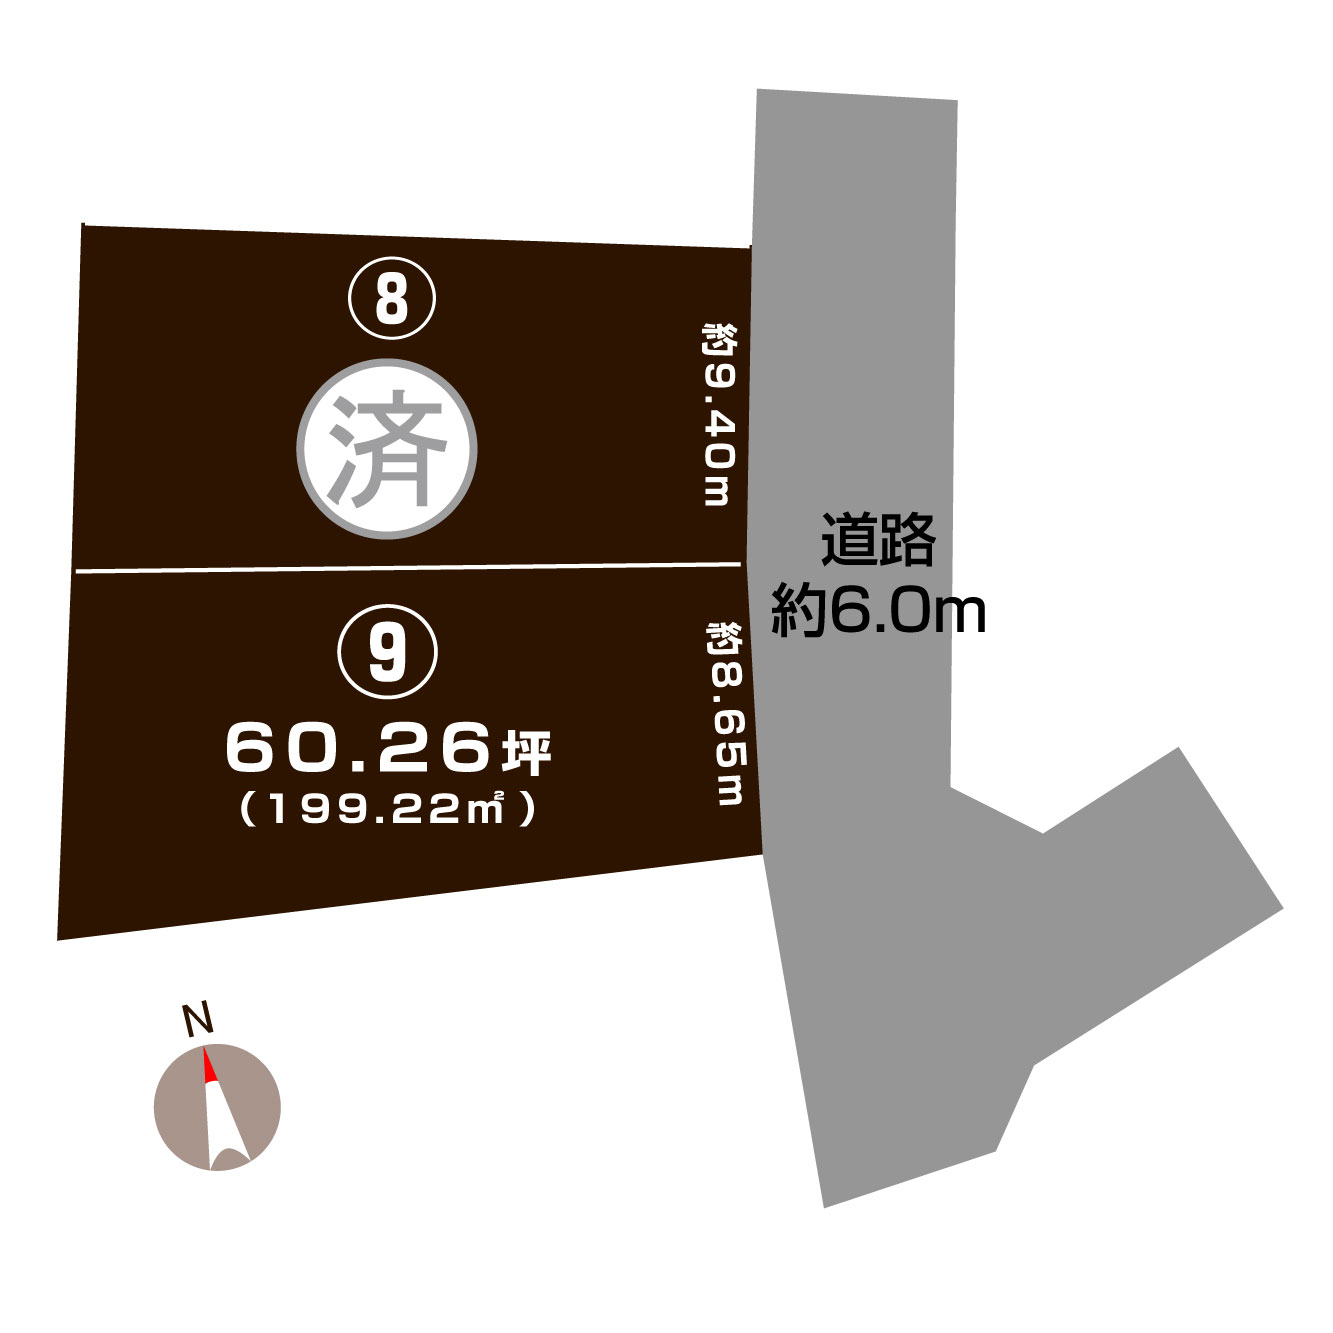 新潟県糸魚川市 横町4丁目の区画図